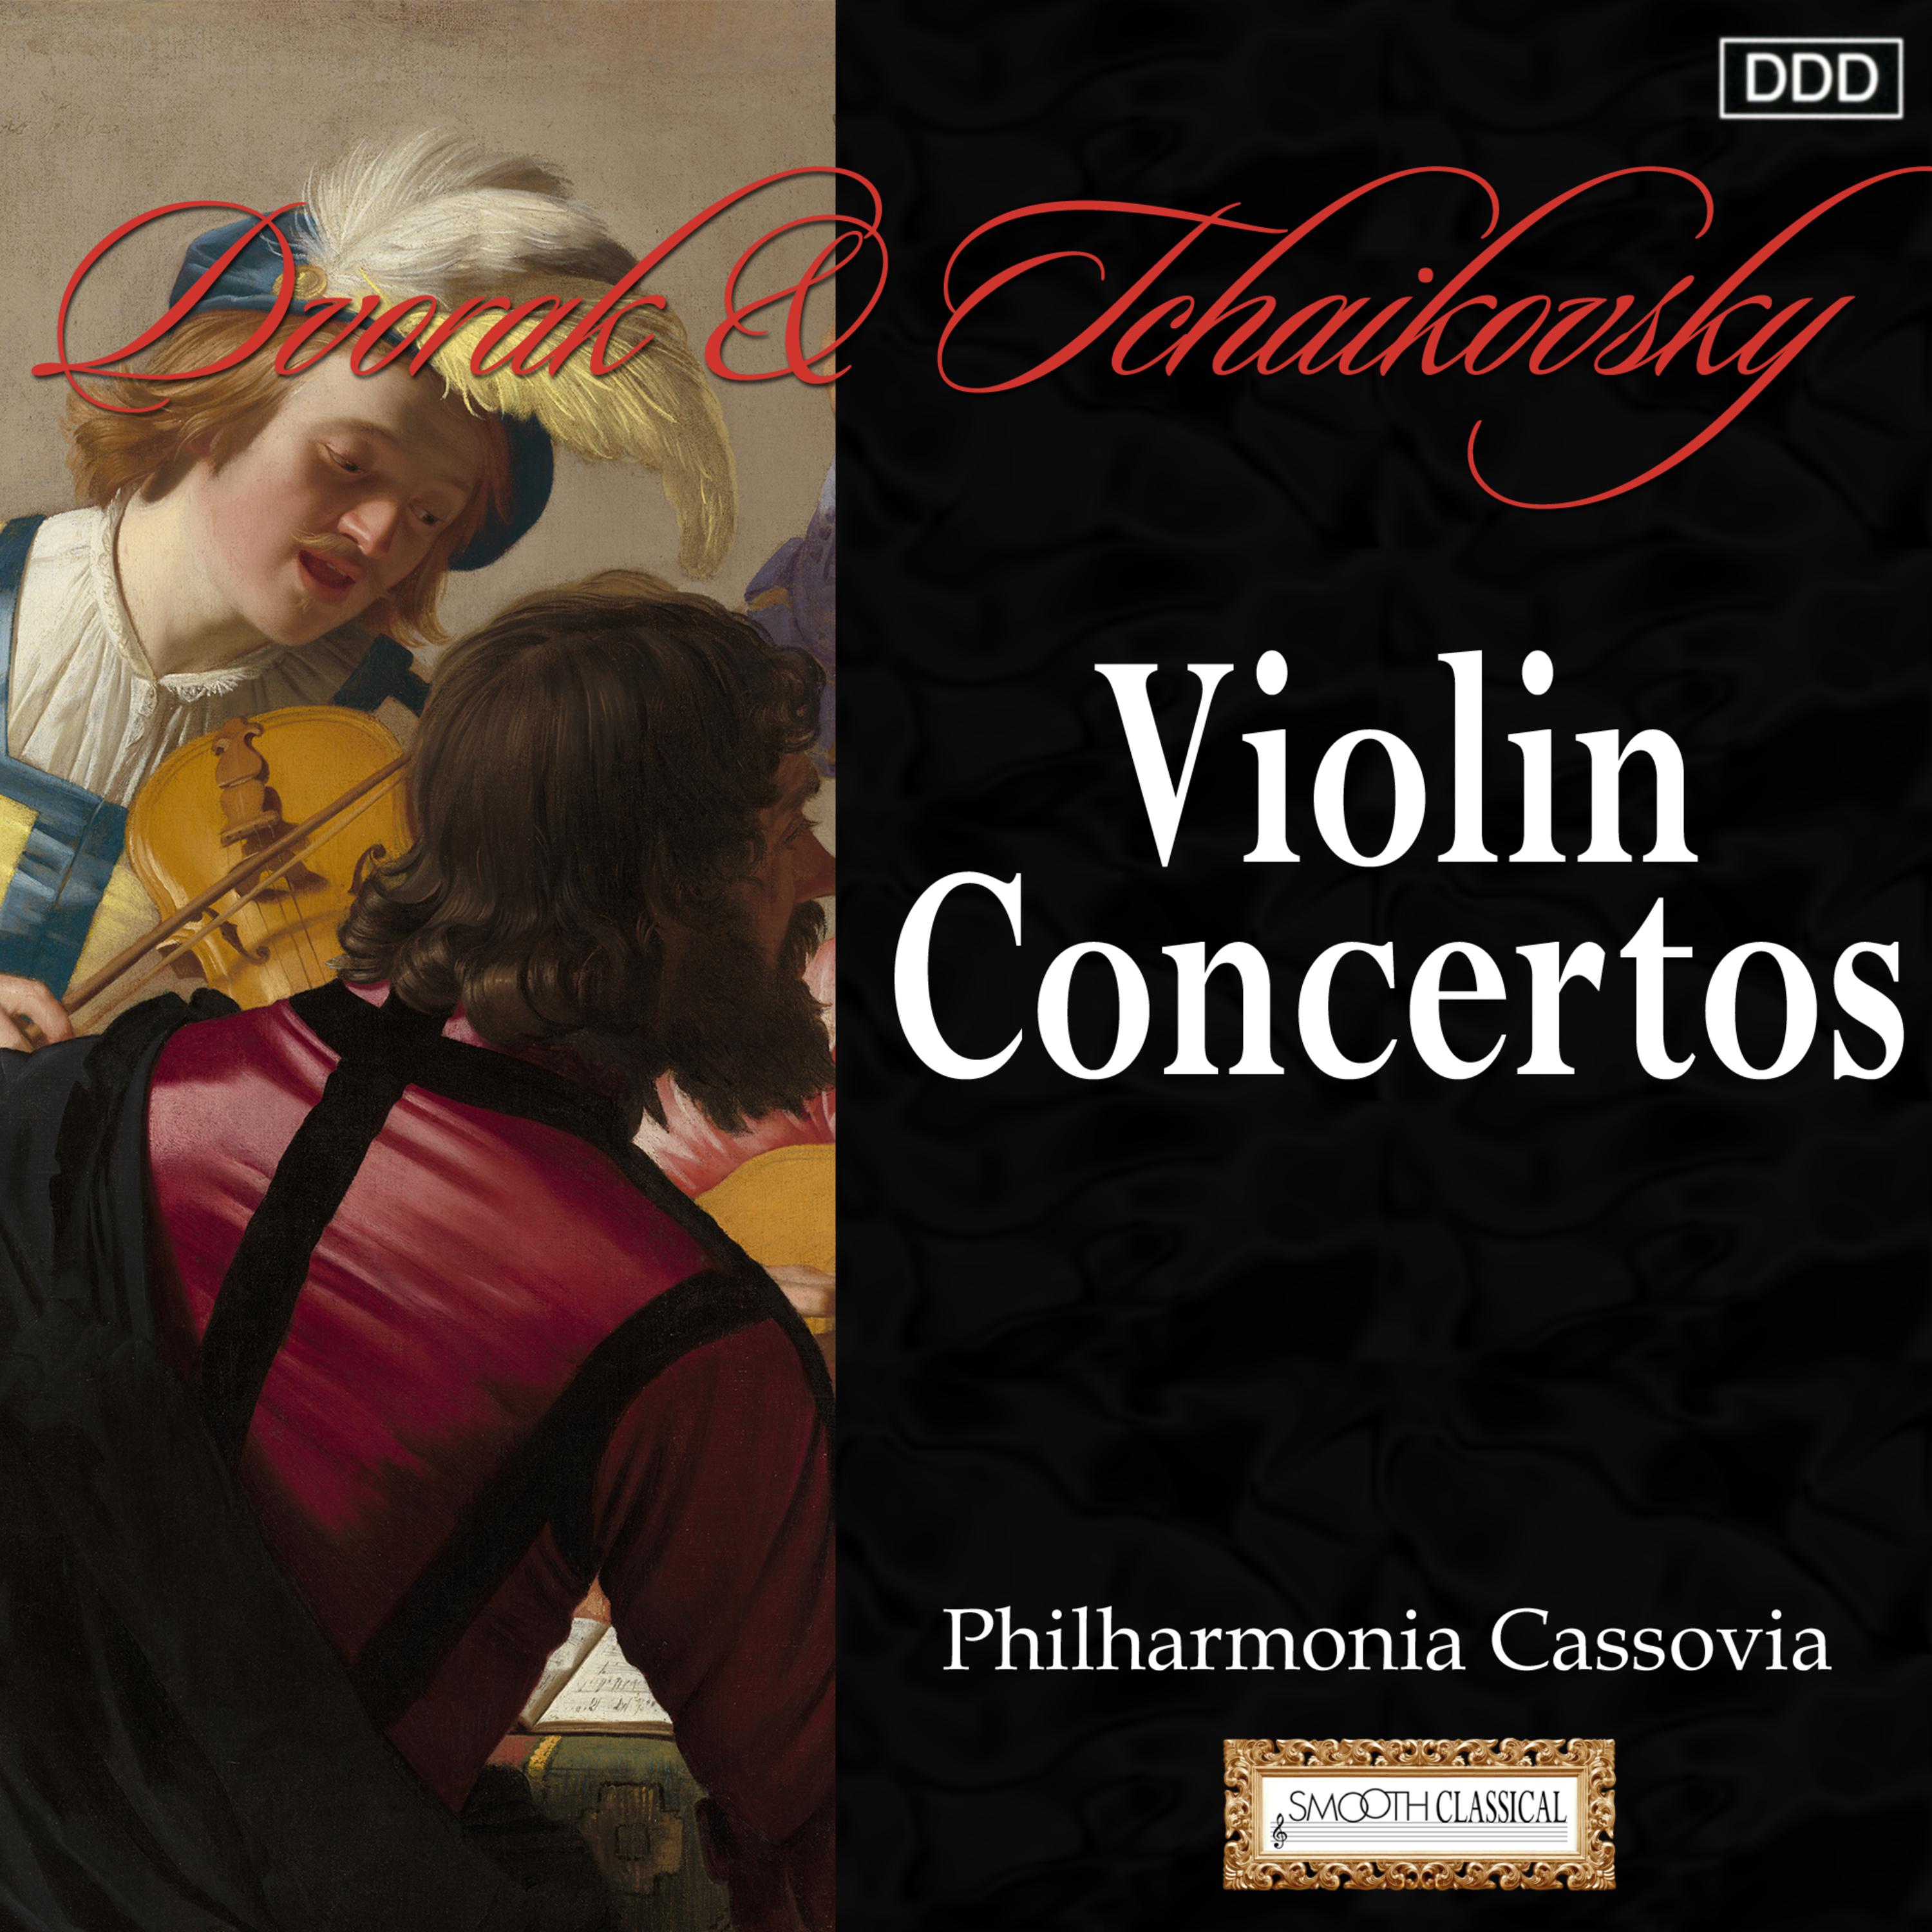 Violin Concerto in A Minor, Op. 53, B. 108: I. Allegro ma non troppo - II. Adagio ma non troppo